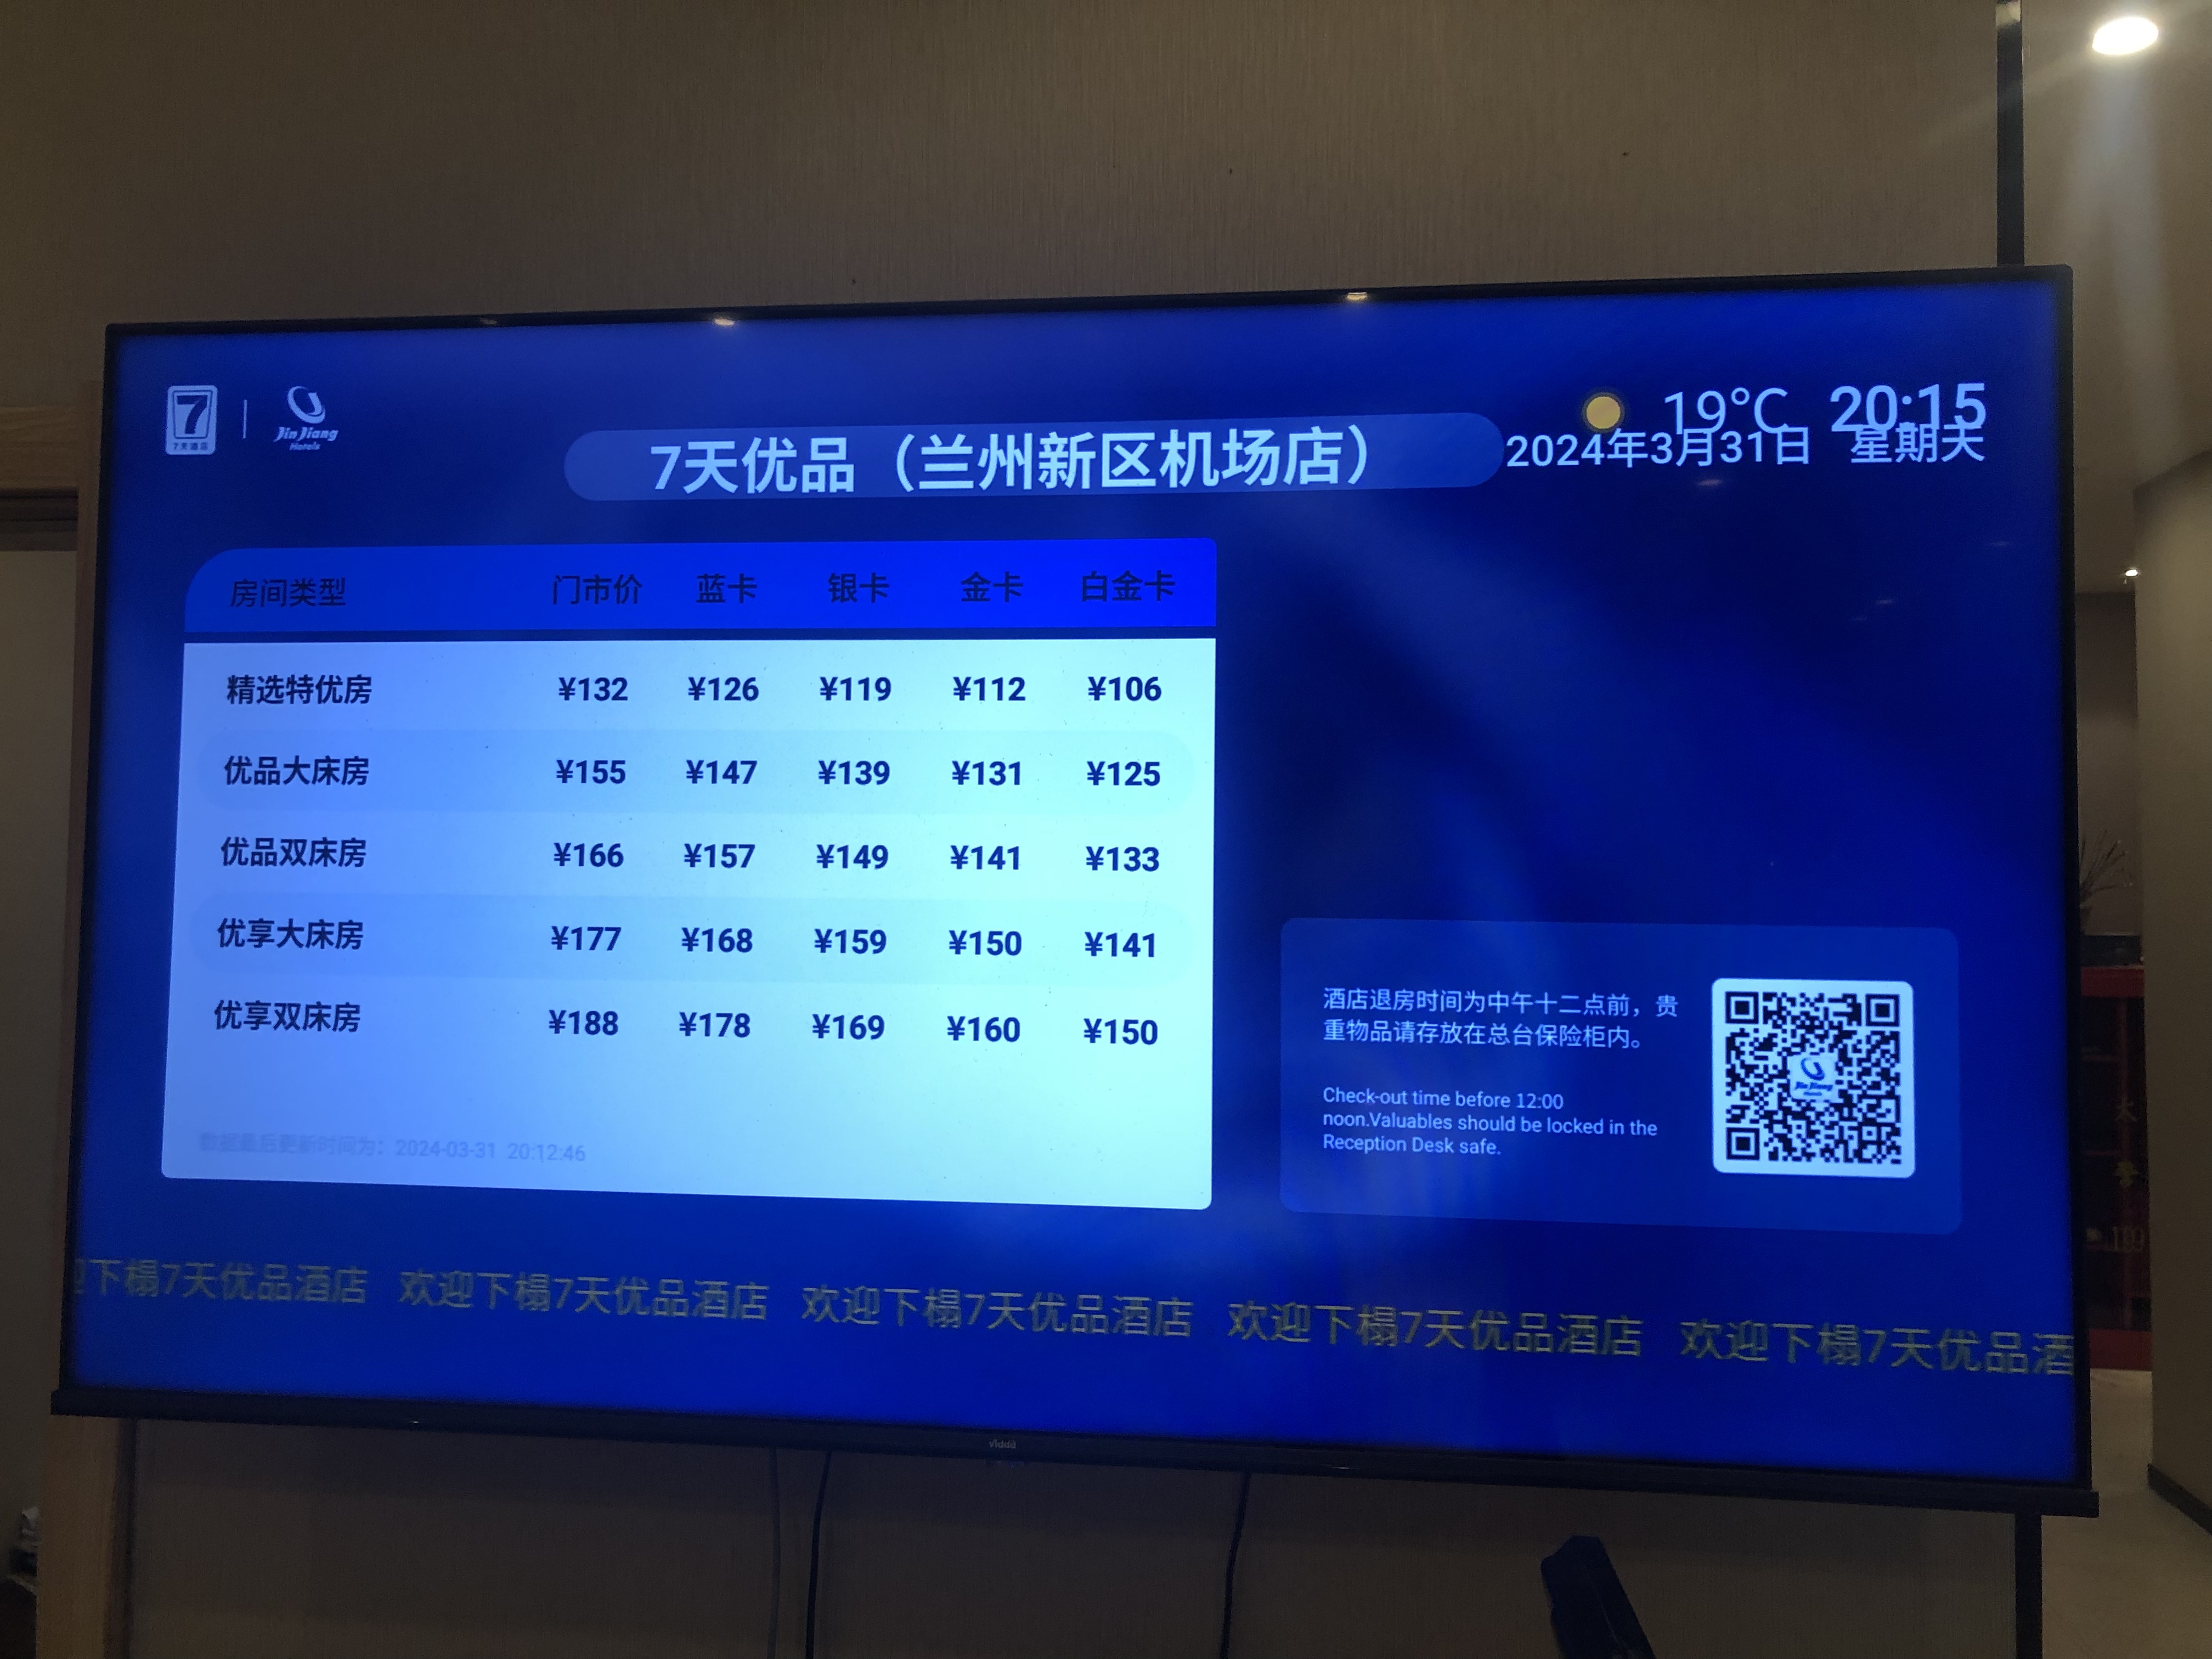 7ƷƵ꣨꣩7⃣️ Days Inn Premium Lanzhou Airport